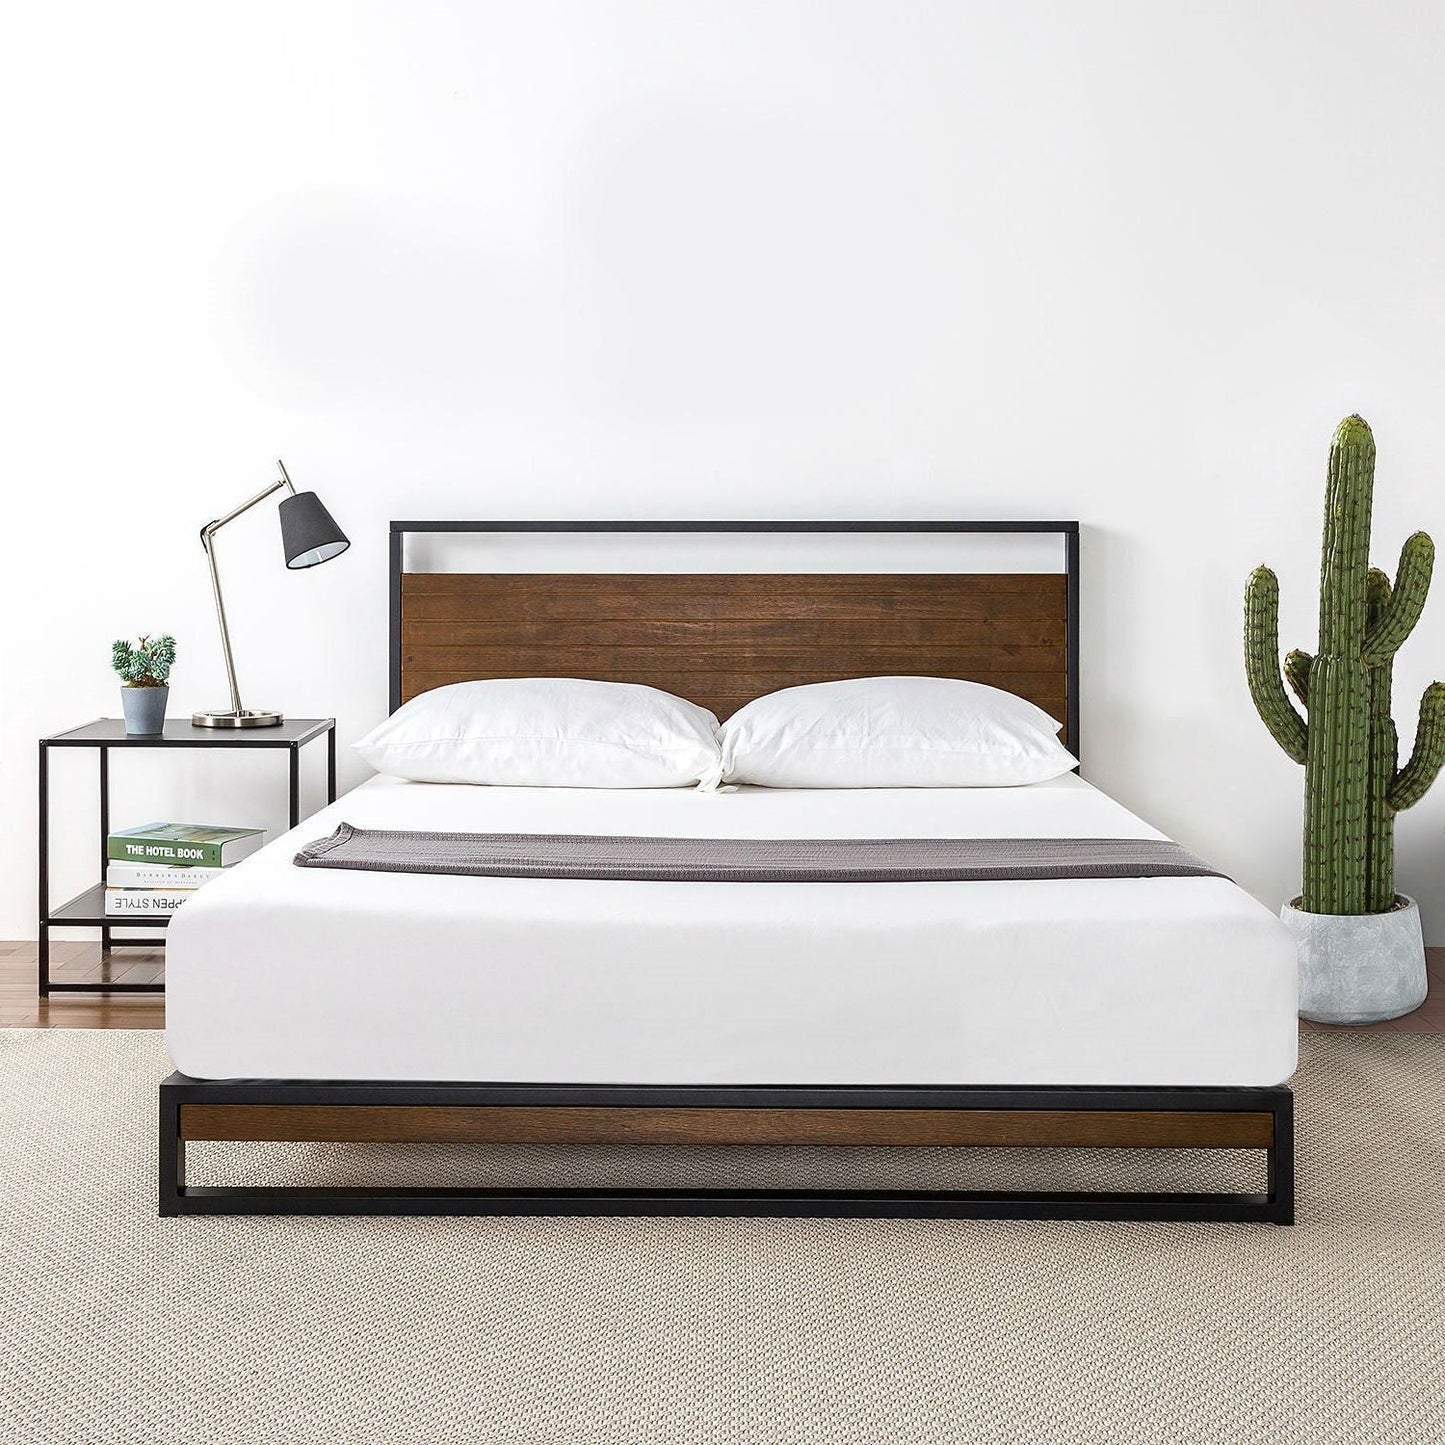 Bedroom > Bed Frames > Platform Beds - King Size Metal Wood Platform Bed Frame With Headboard